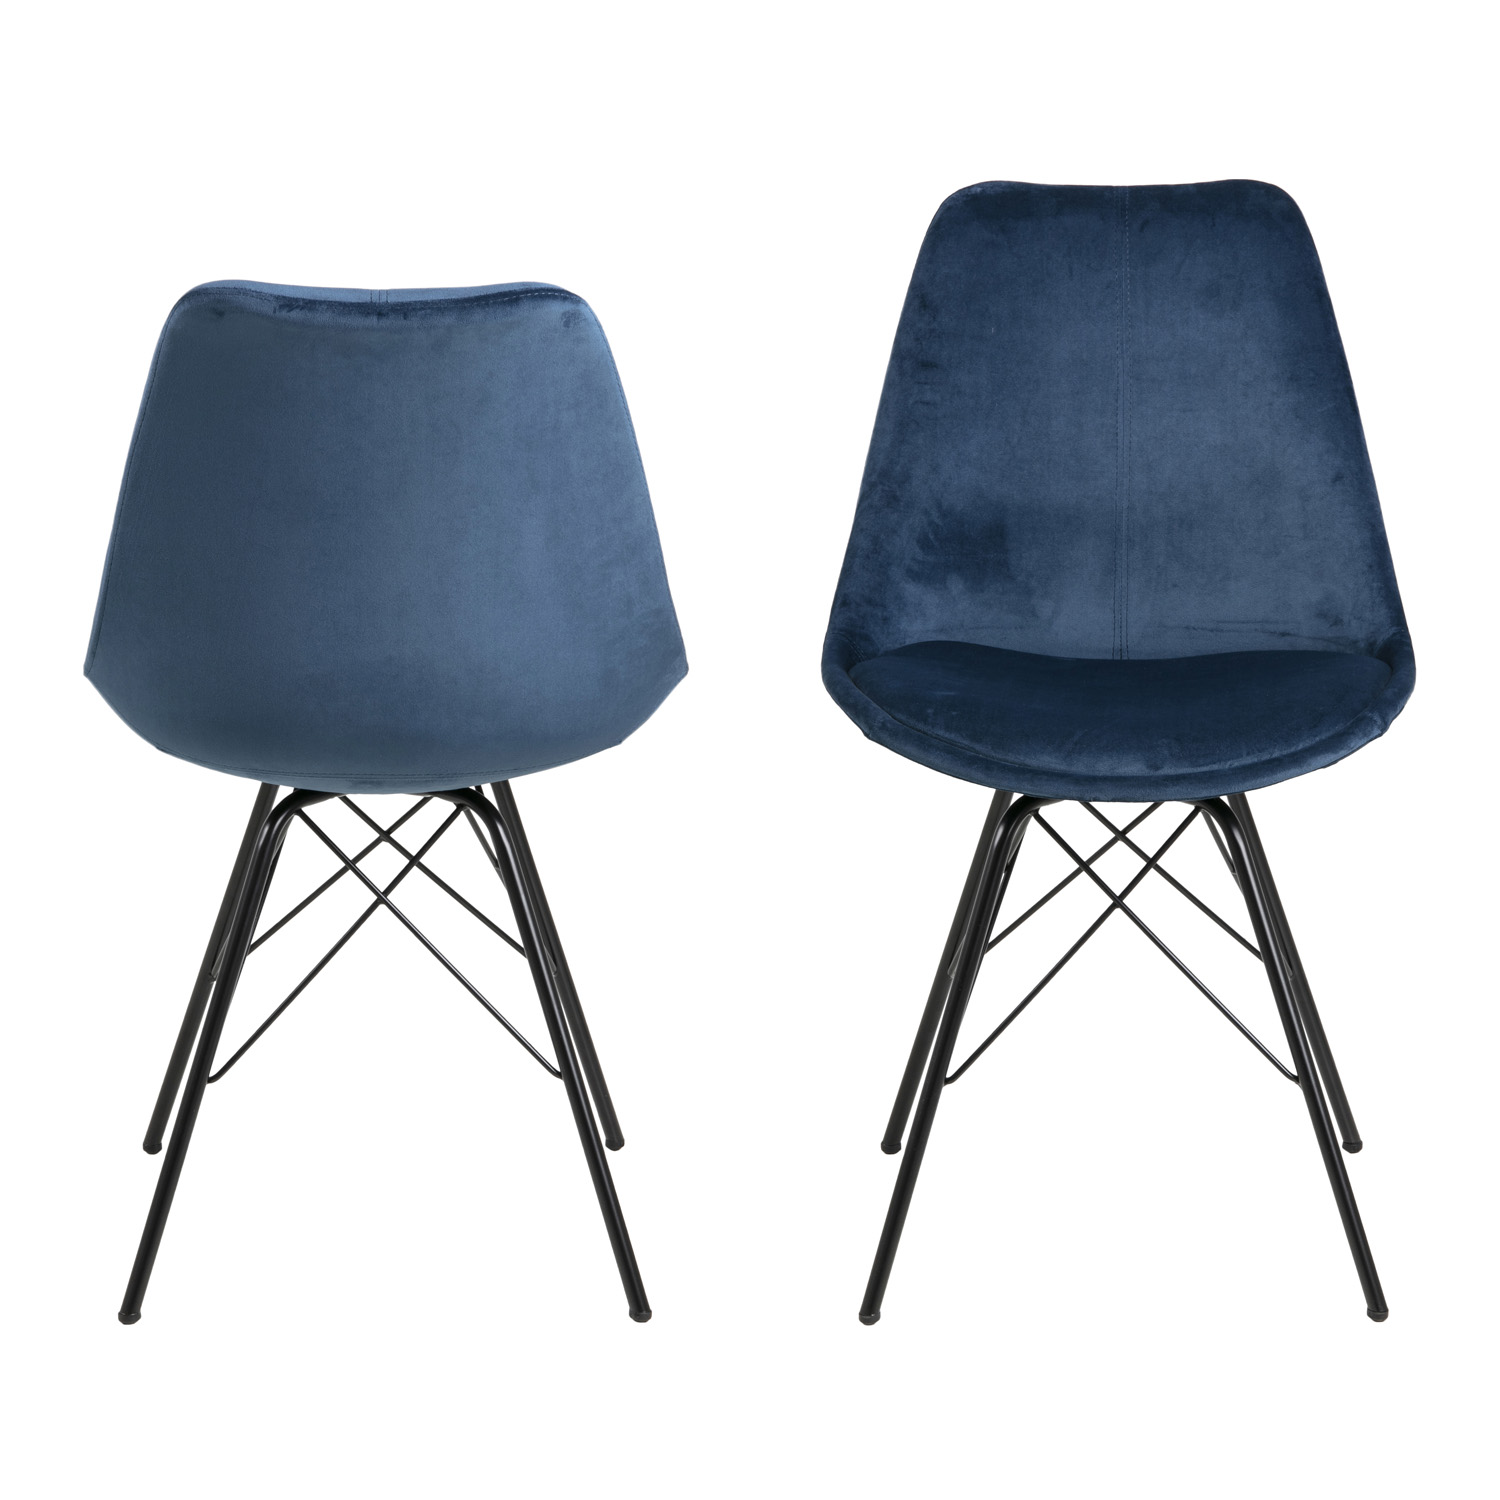 ACT NORDIC Eris spisebordsstol - marineblå stof og sort metal